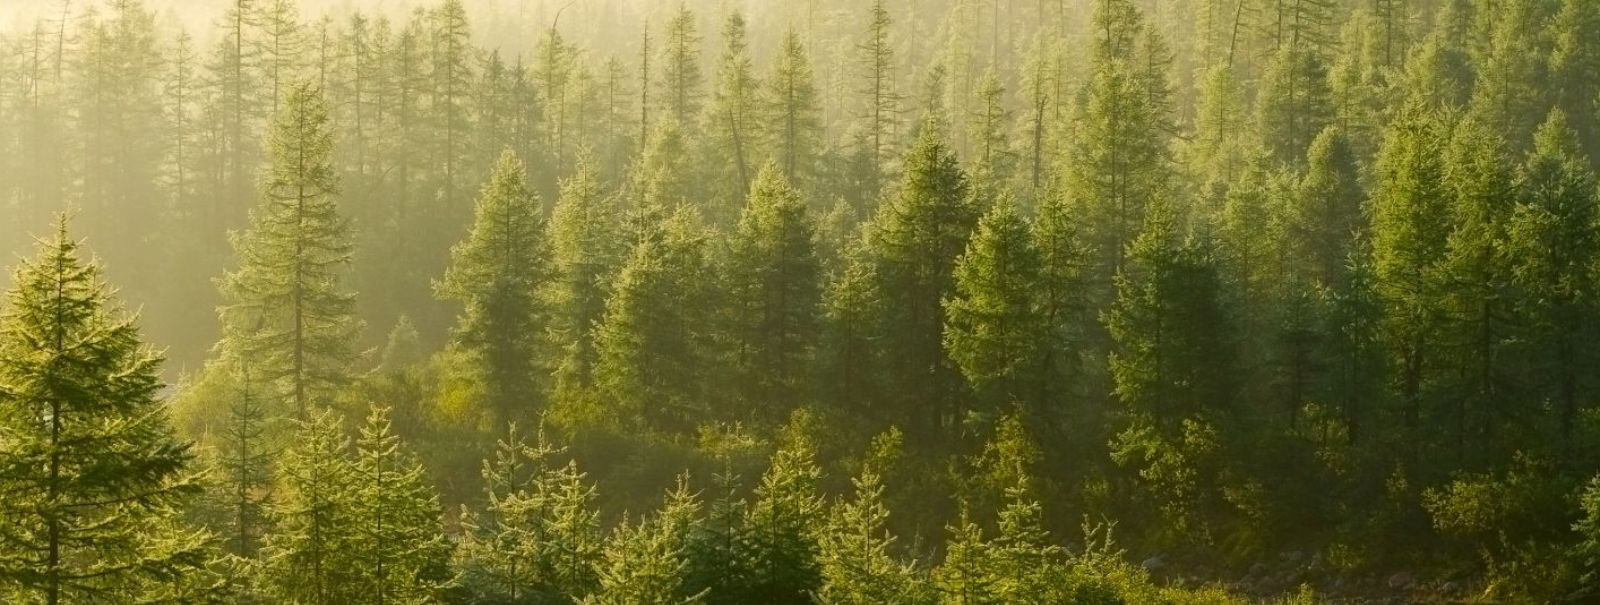 Metsade hooldamine on oluline tegevus, mis tagab metsade jätkusuutliku kasutamise ning säilitab nende ökosüsteemi funktsioone, bioloogilist mitmekesisust ja loo